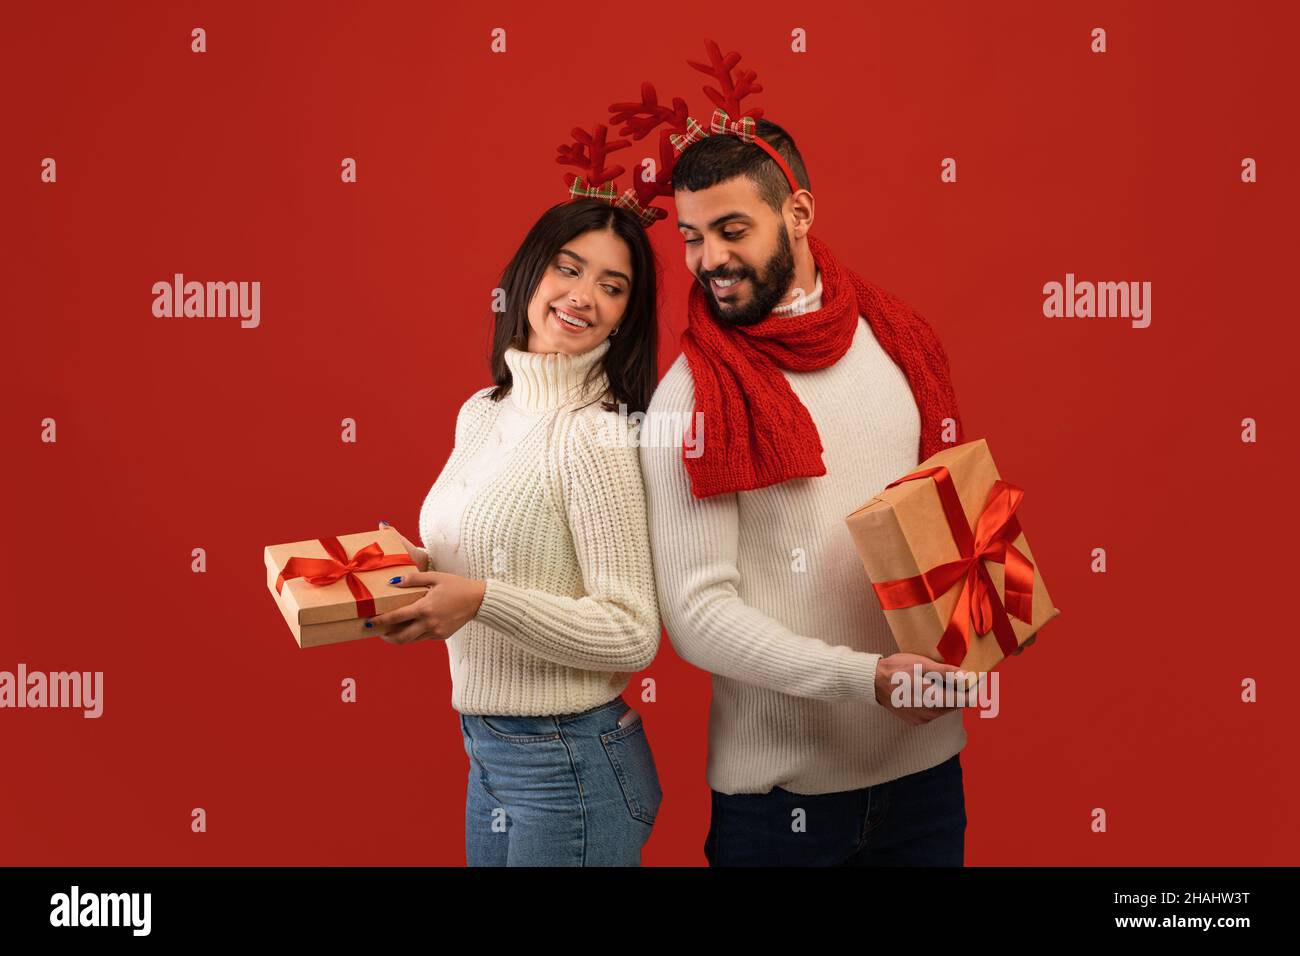 Jeune heureux Moyen-Orient couple dans les cornes de cerf tenant des boîtes cadeaux de Noël, prêt à échanger des cadeaux de Noël Banque D'Images